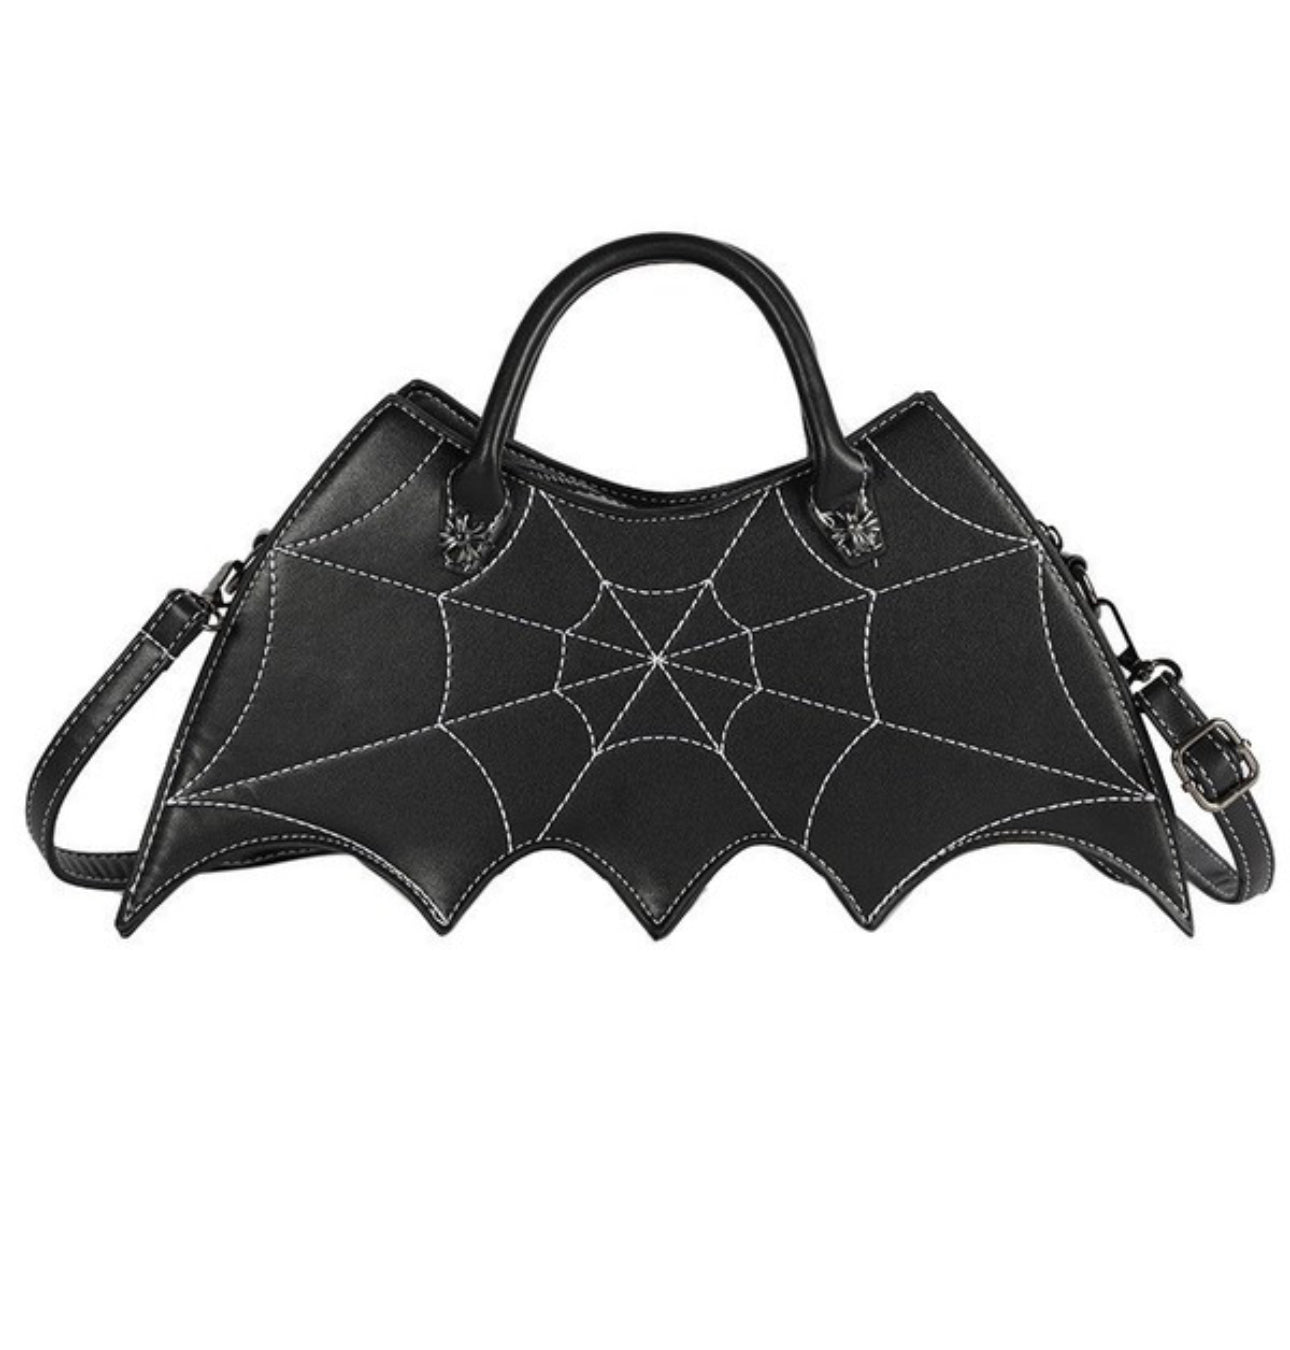 New bat bag